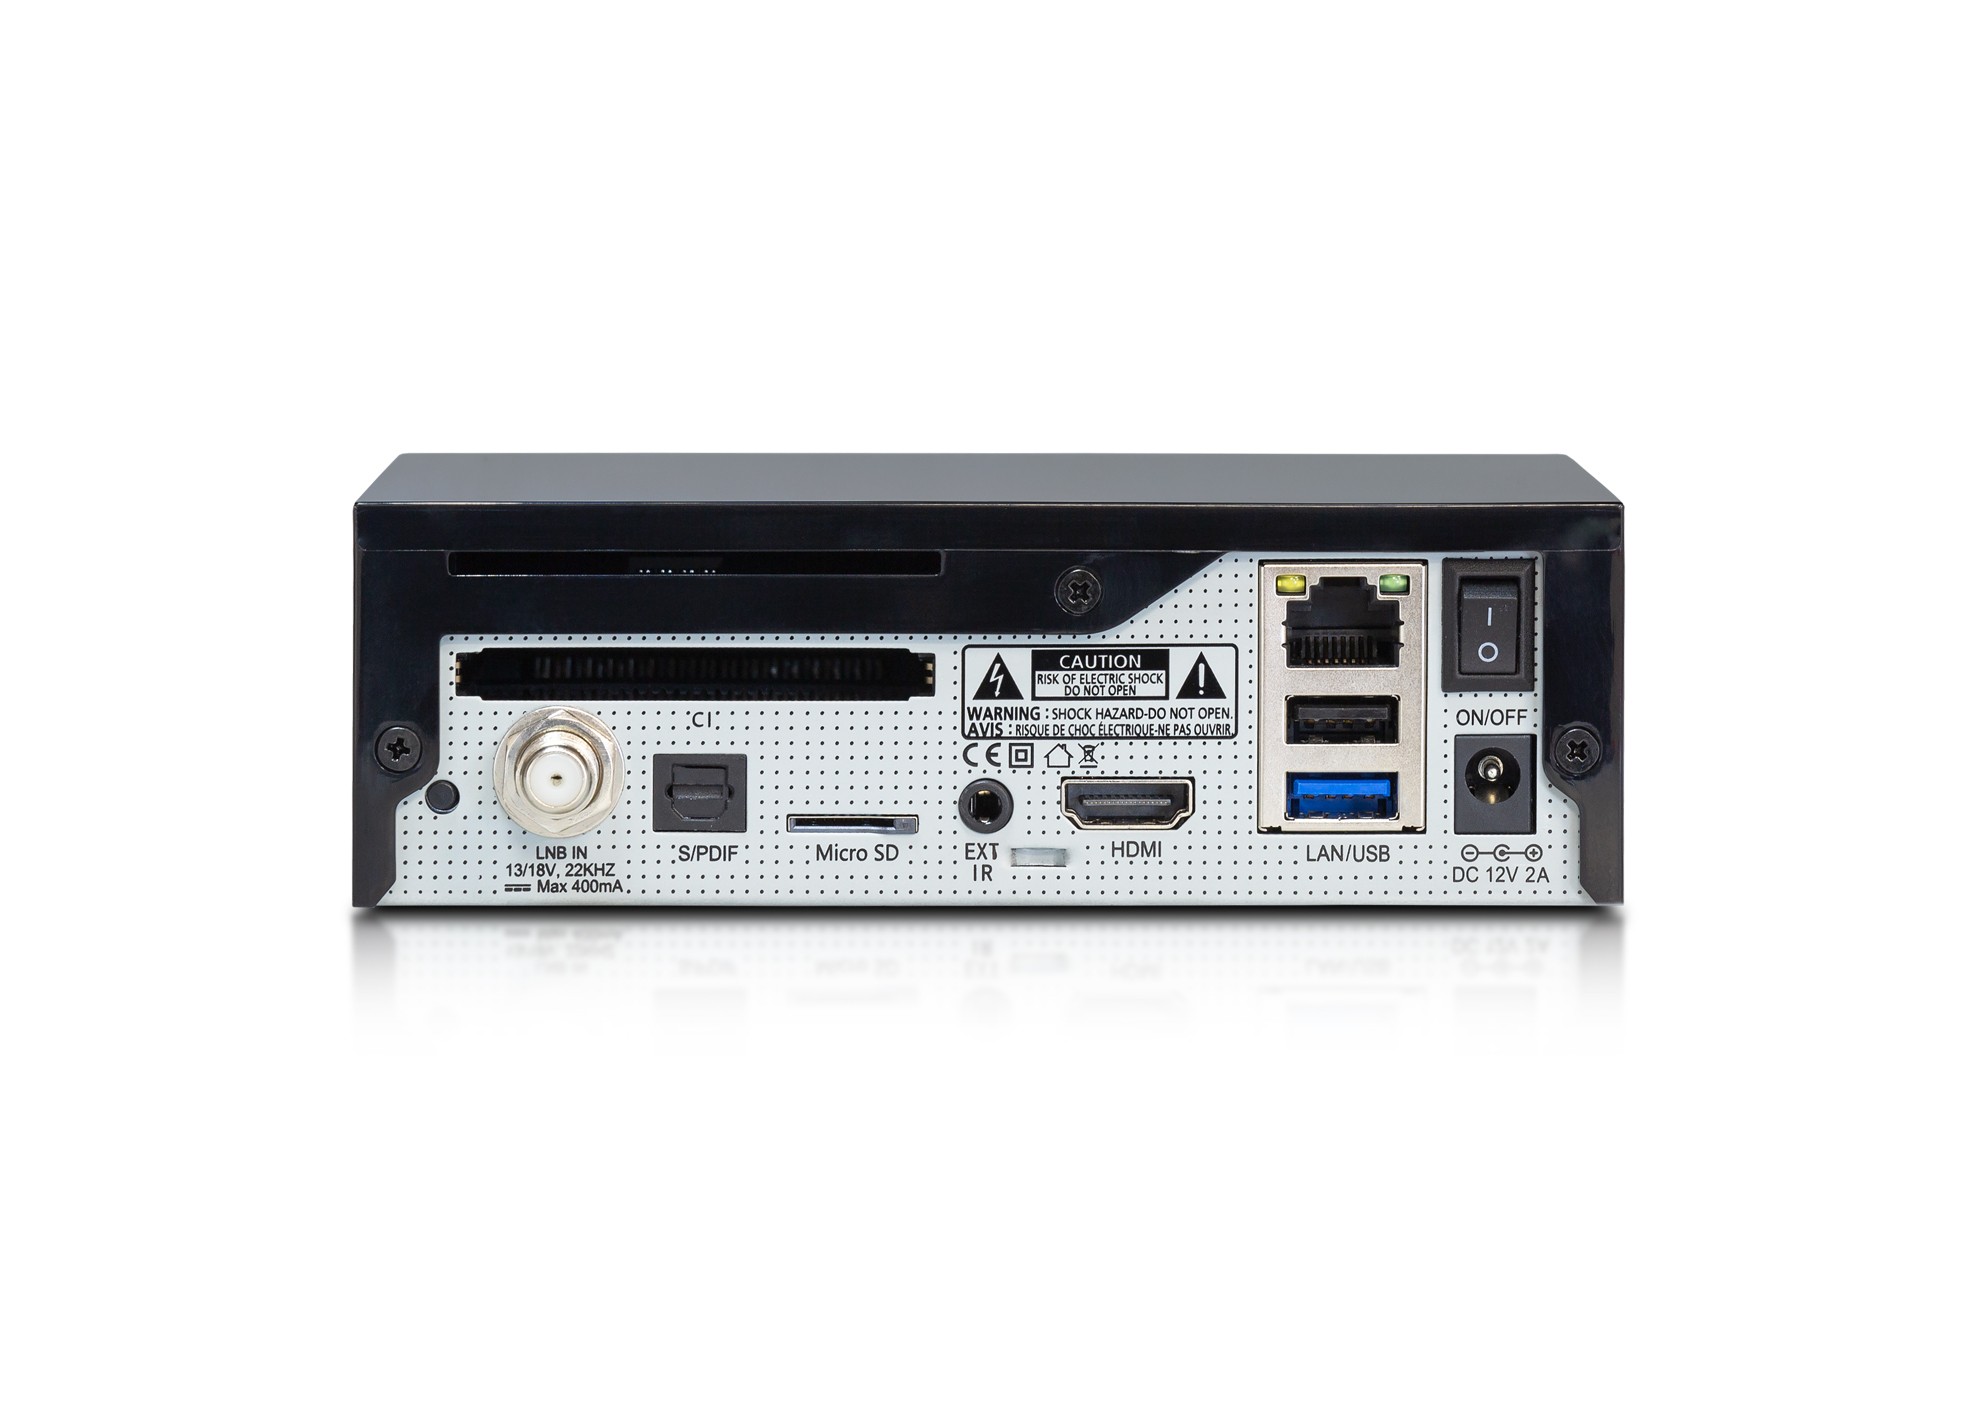 AB PULSe 4K Mini UHD Sat-Receiver (1xDVB-S2X, Linux E2, H.265, CI, LAN, schwarz)